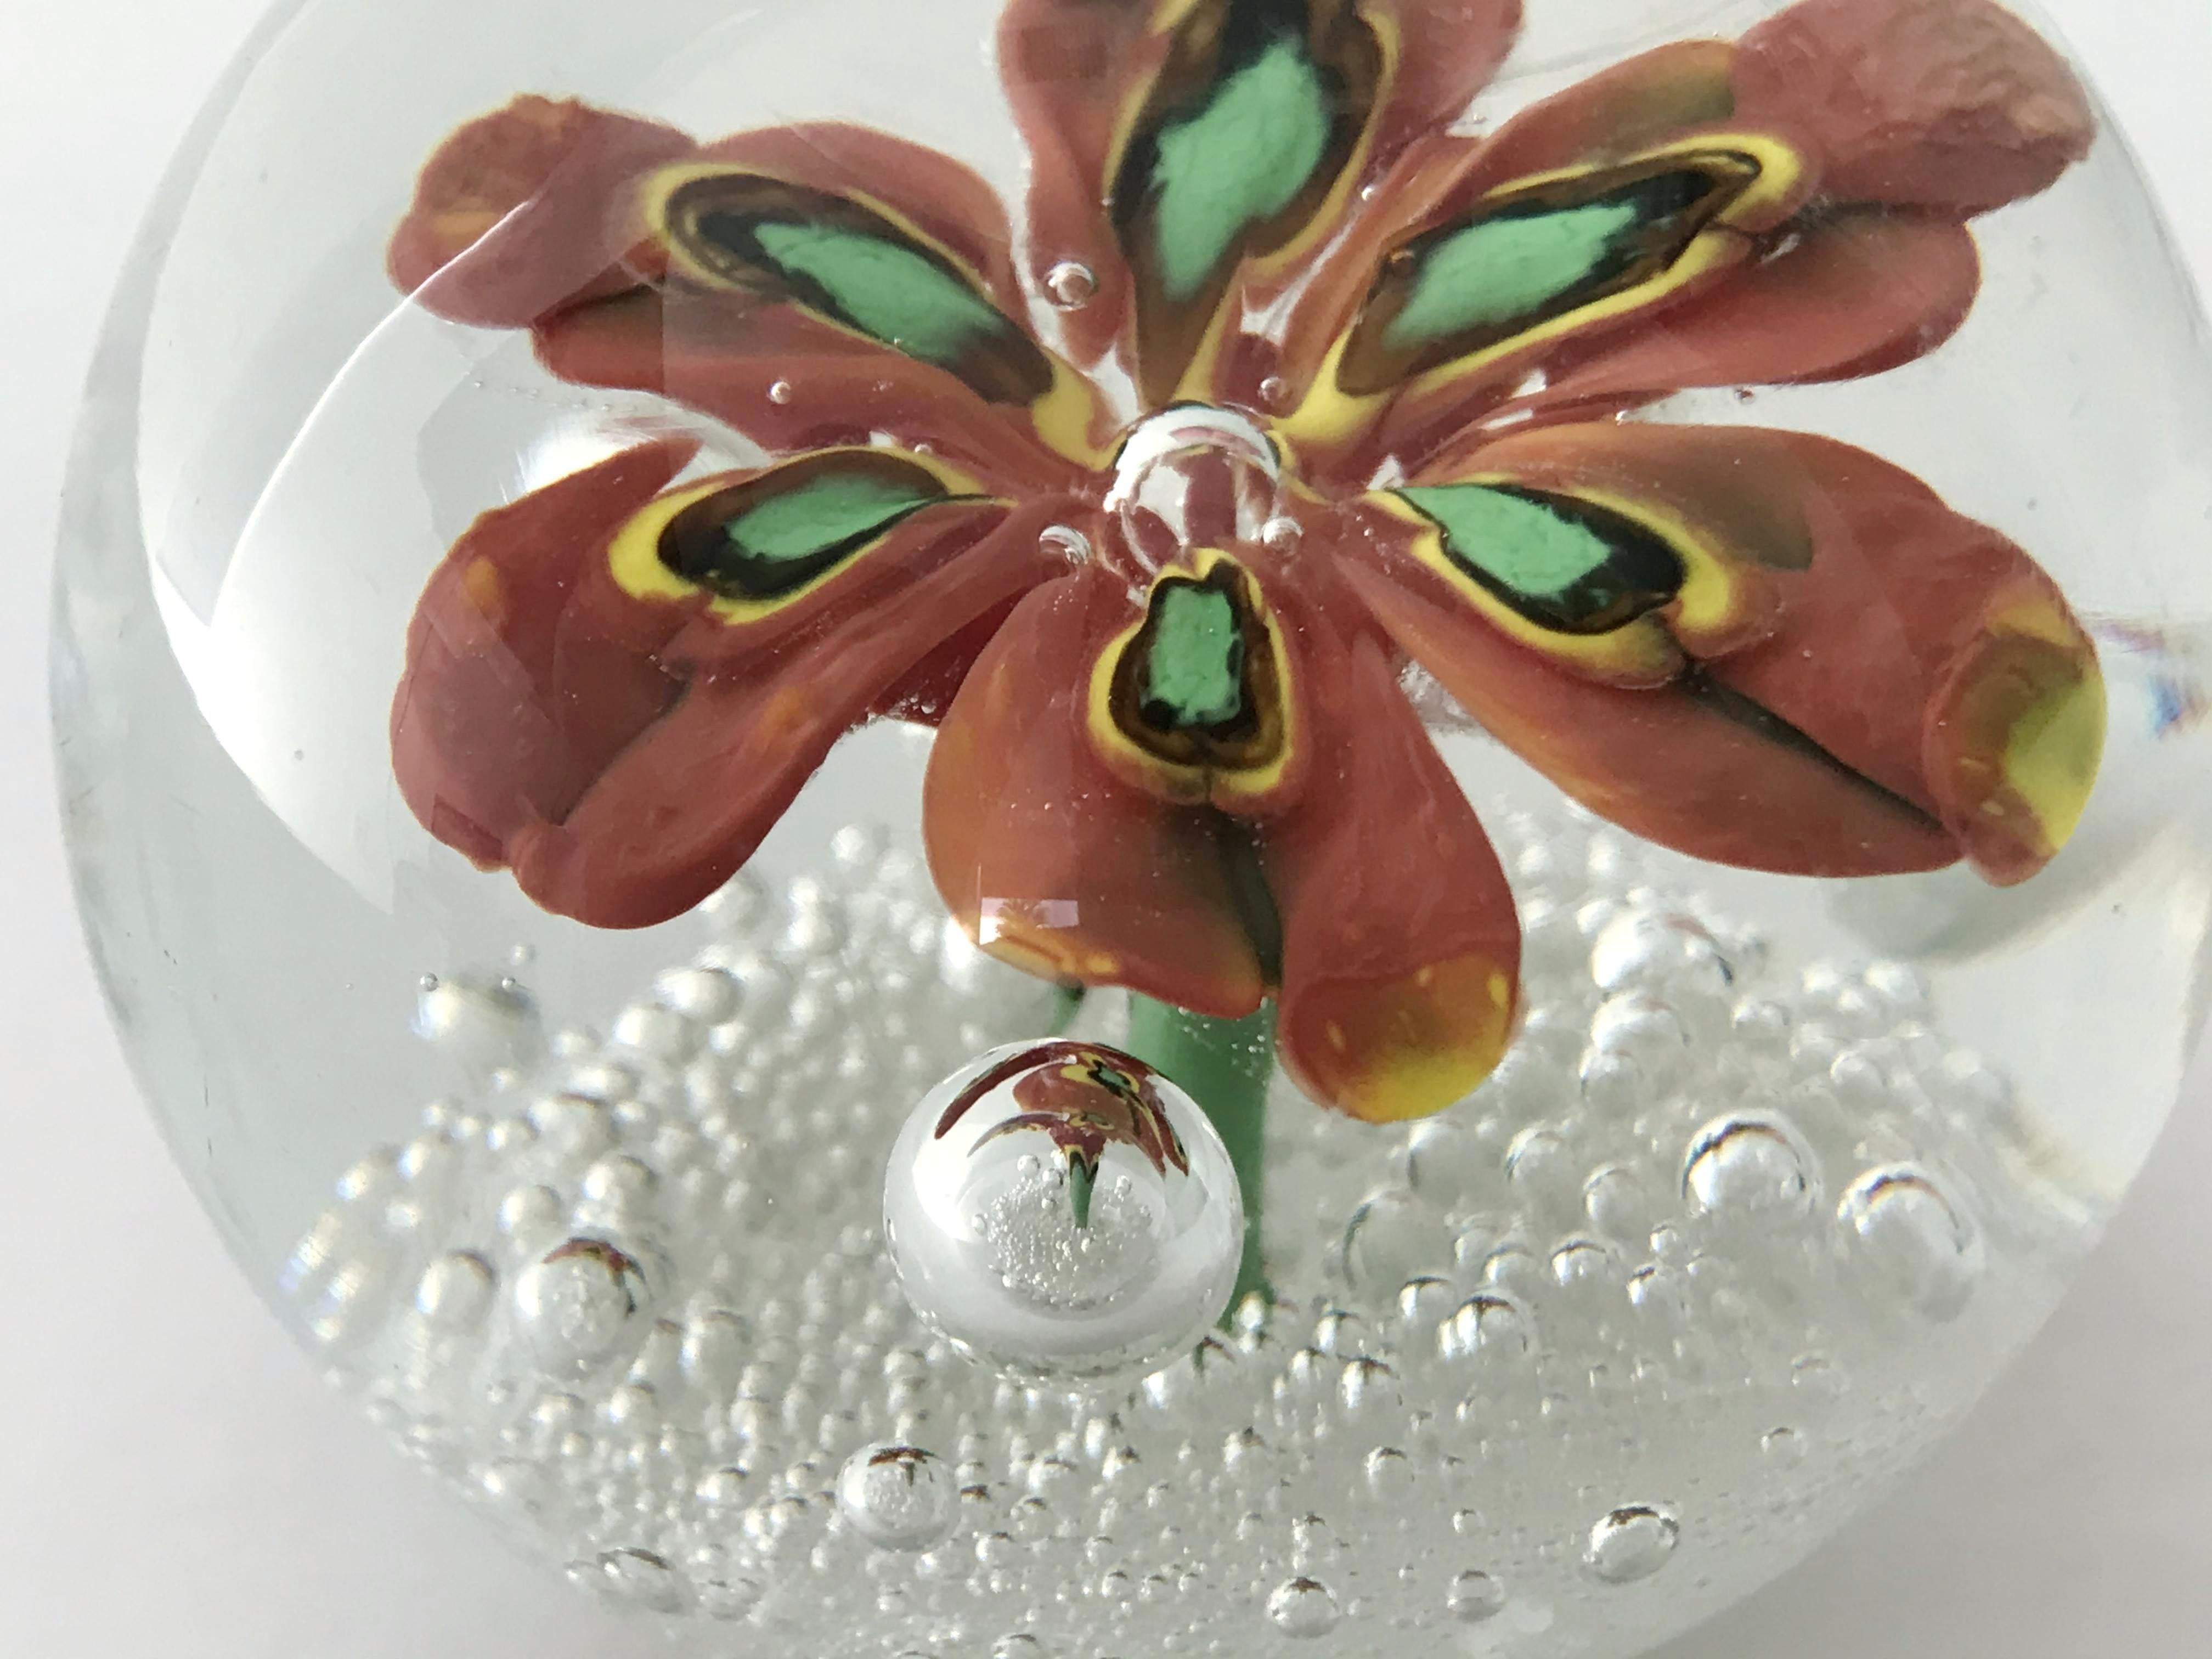 20th Century Murano Glass Paperweight